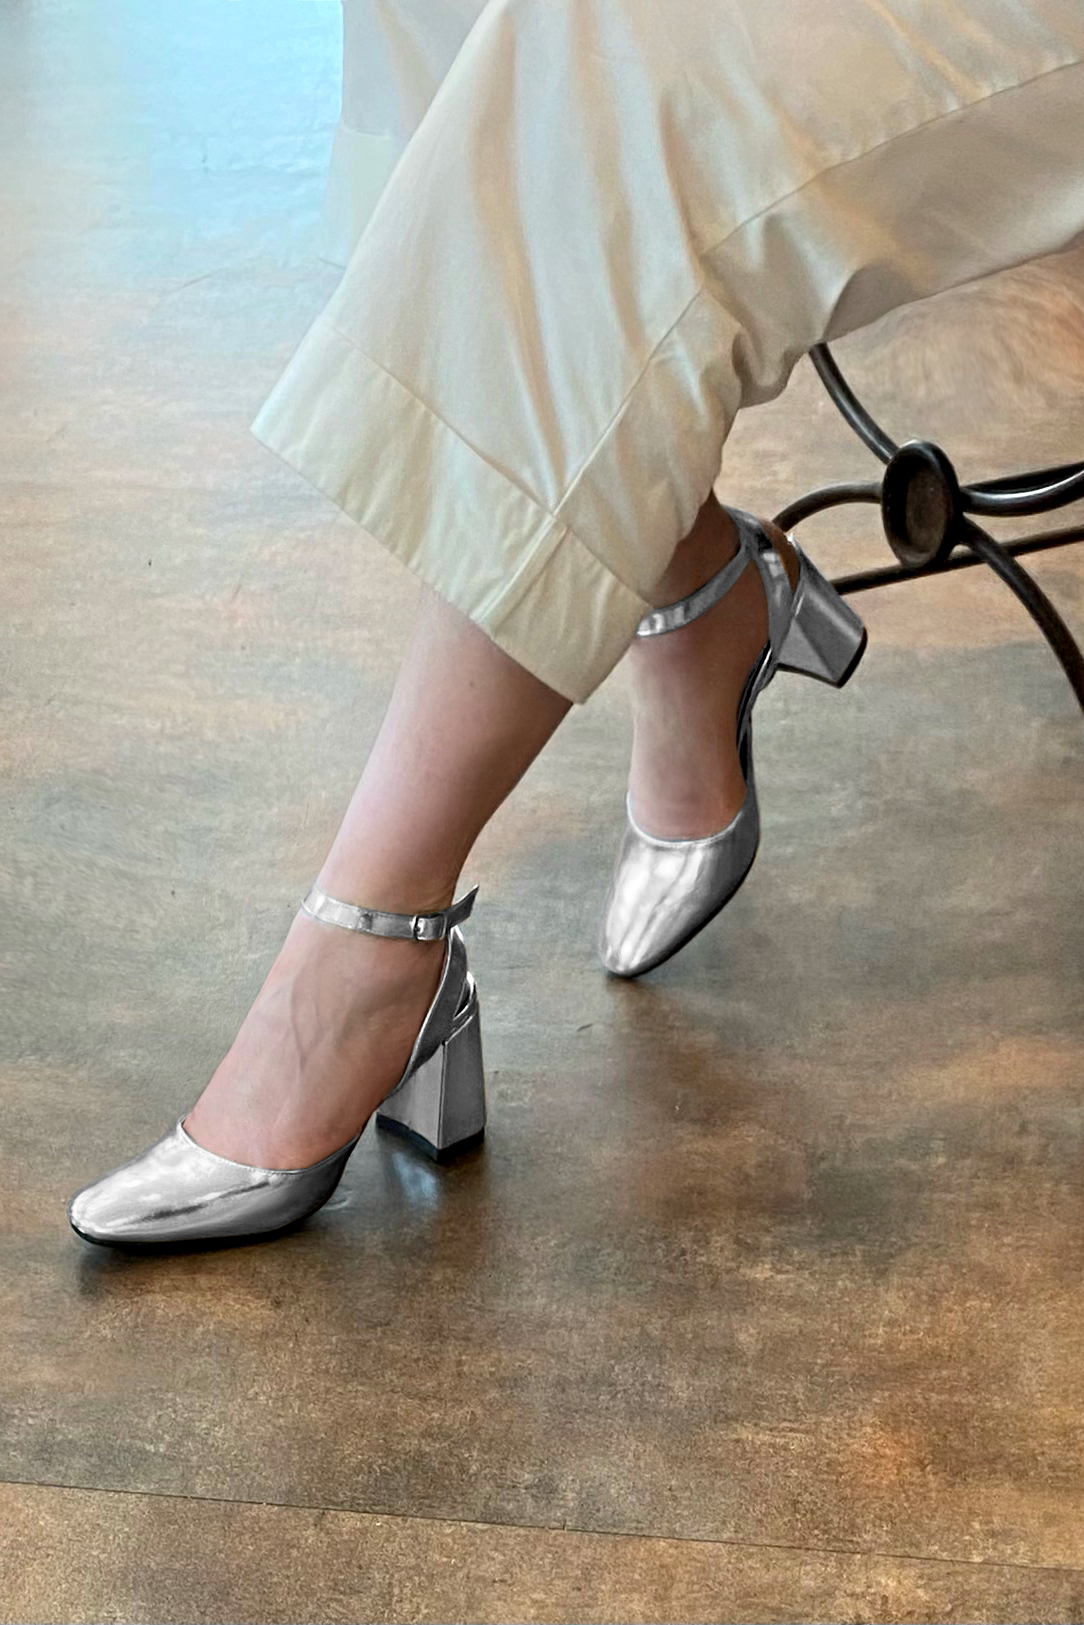 Chaussure femme à brides : Chaussure arrière ouvert avec une bride sur le cou-de-pied couleur argent platine. Bout rond. Talon haut évasé. Vue porté - Florence KOOIJMAN